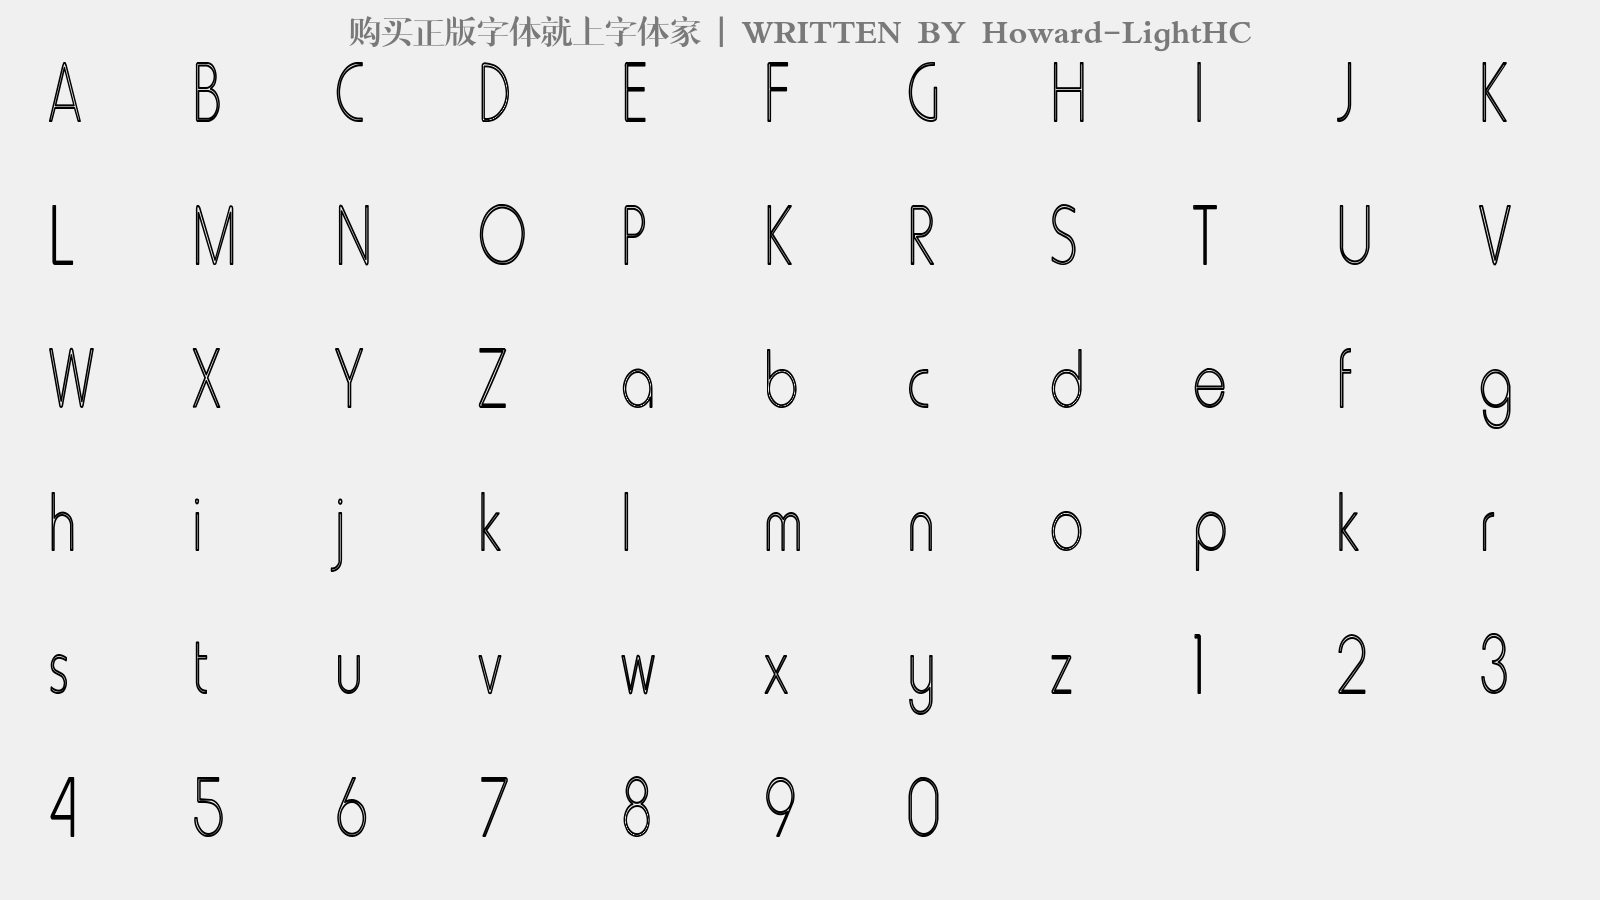 Howard-LightHC - 大写字母/小写字母/数字